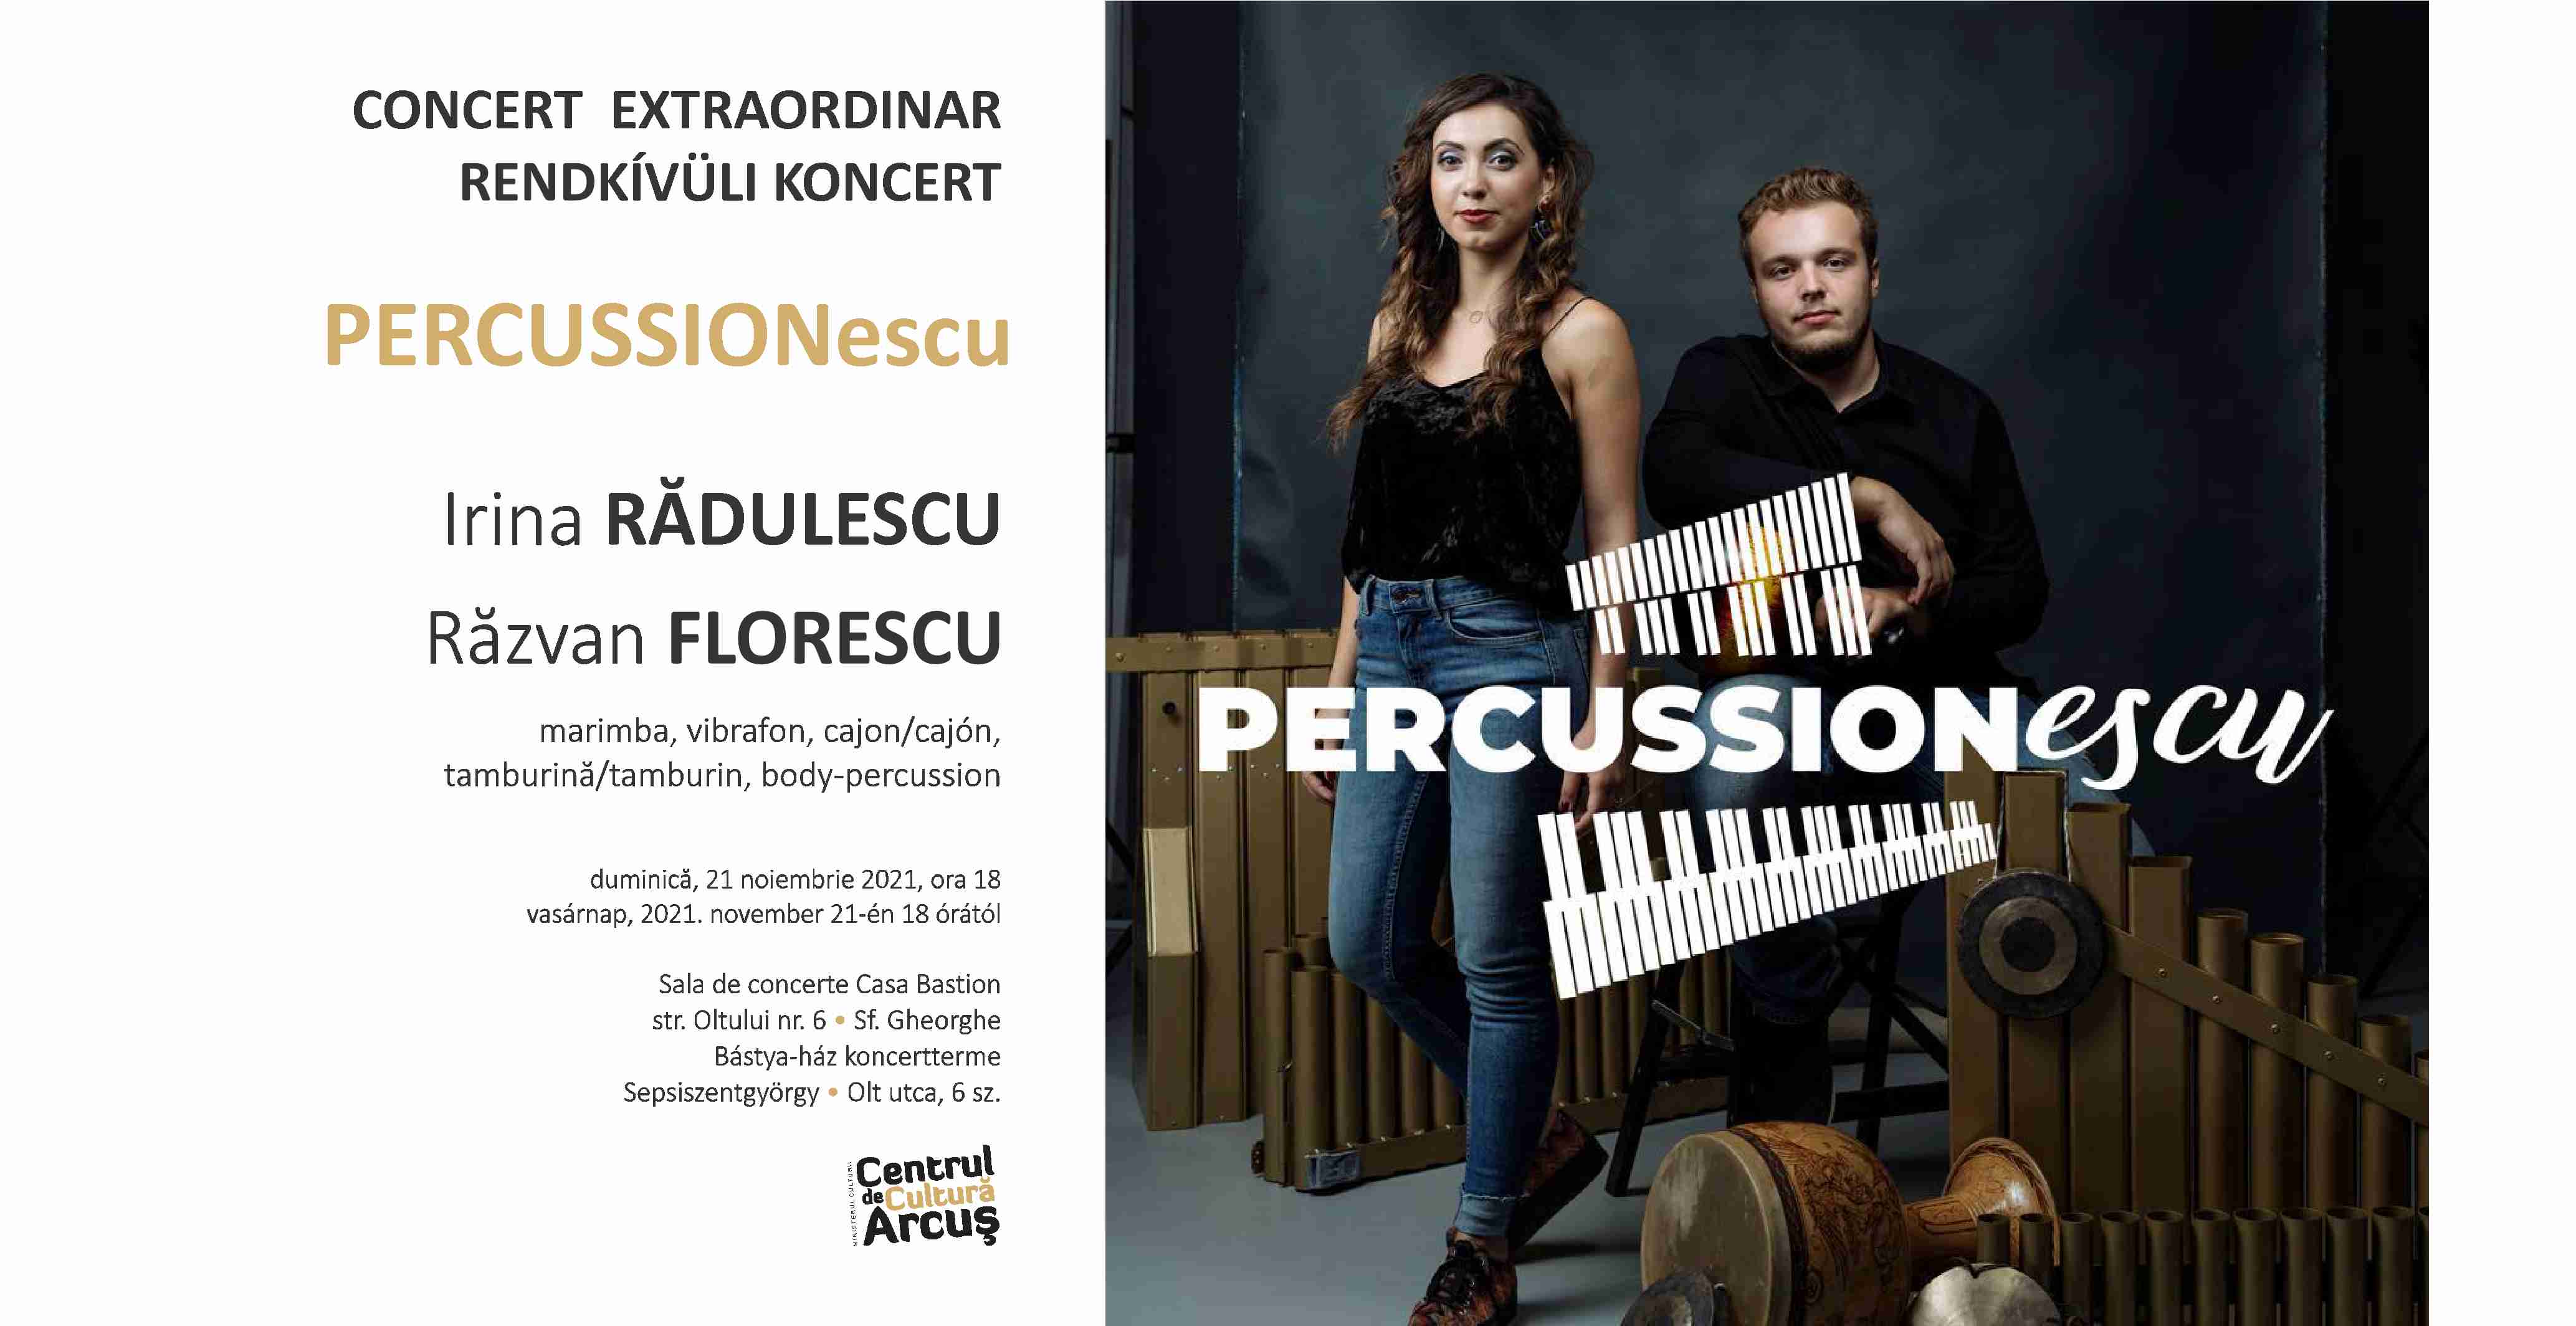 Rendkívüli koncert - PERCUSSIONescu